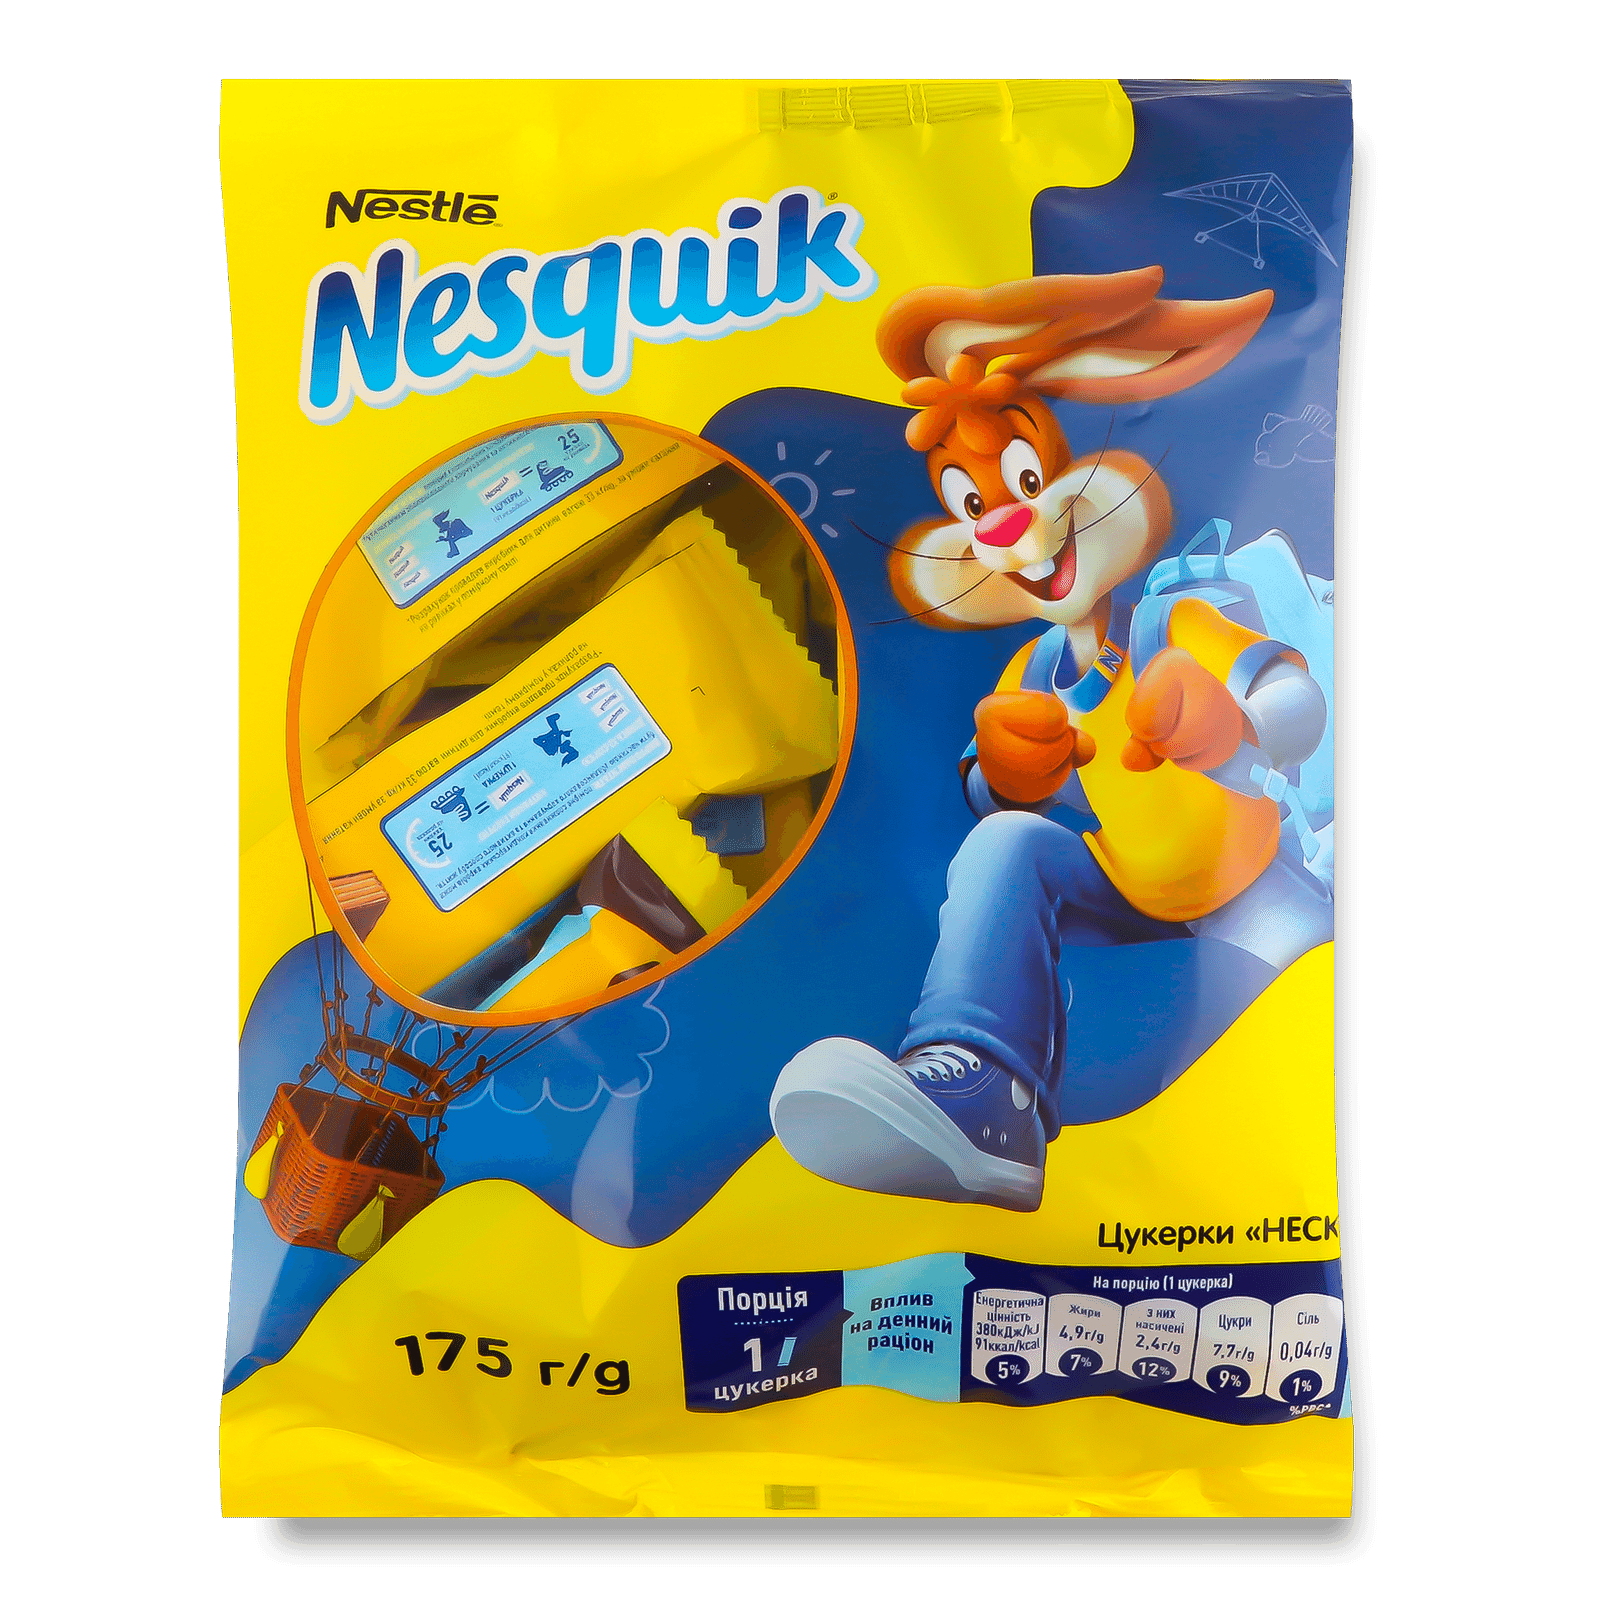 Цукерки Nesquik - 1